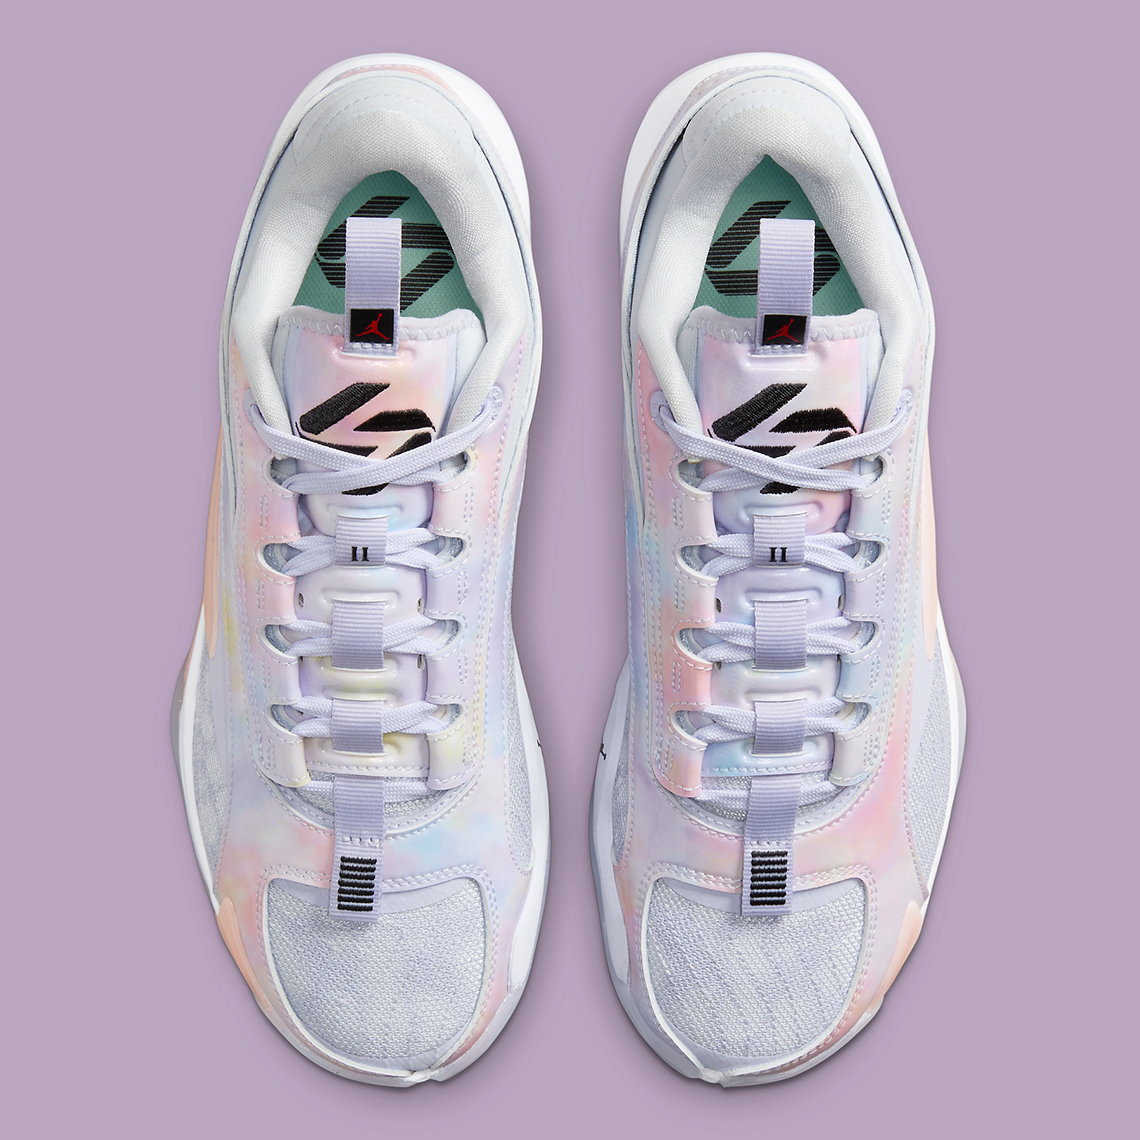 The Jordan Luka 2 Nebula Releases July 27 - Sneaker News